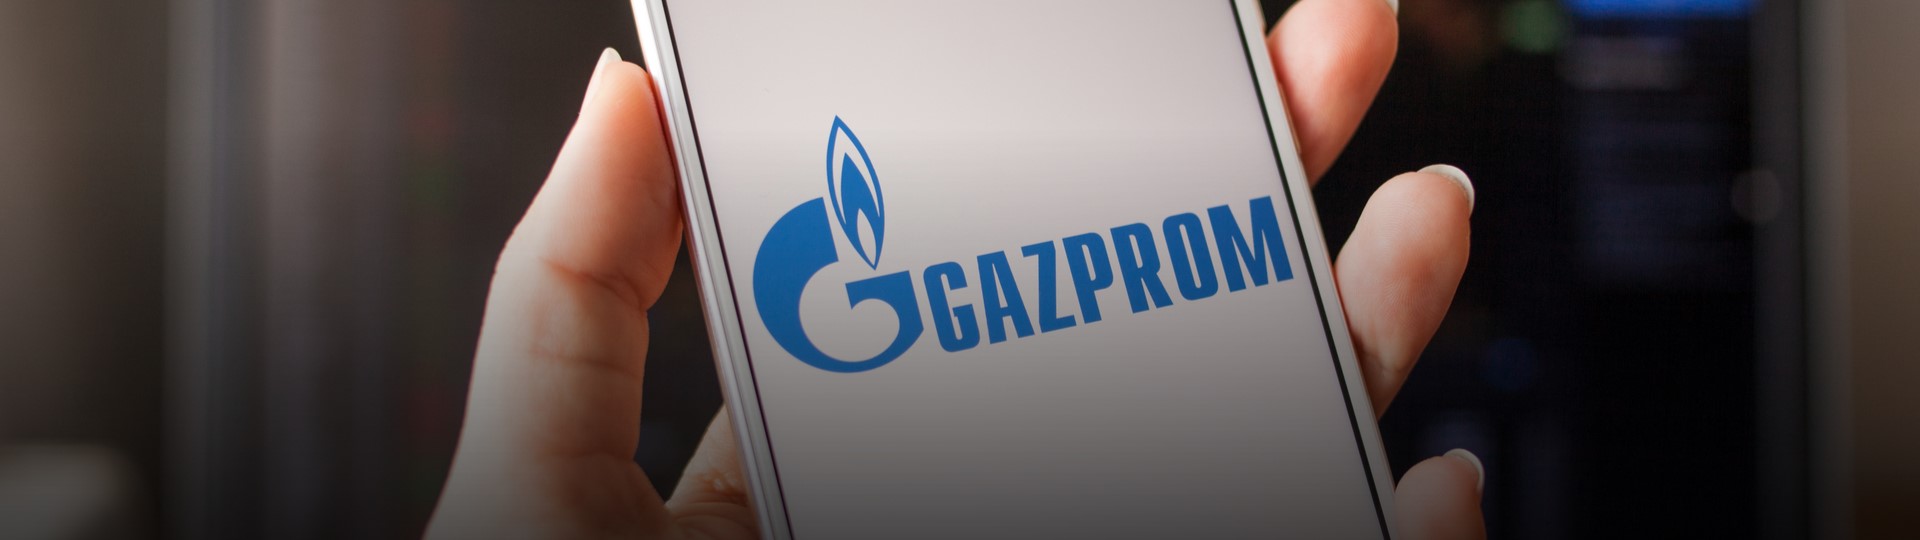 Gazprom je kvůli slabému rublu ve vysoké ztrátě